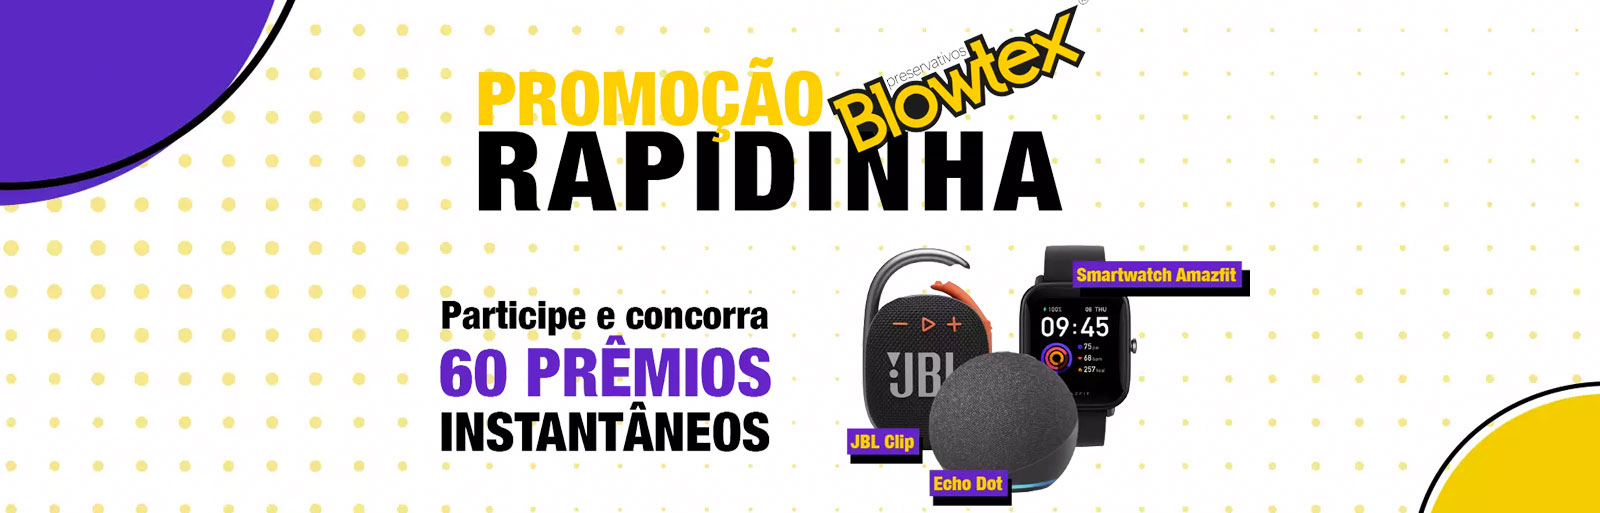 Promoção Rapidinha Blowtex